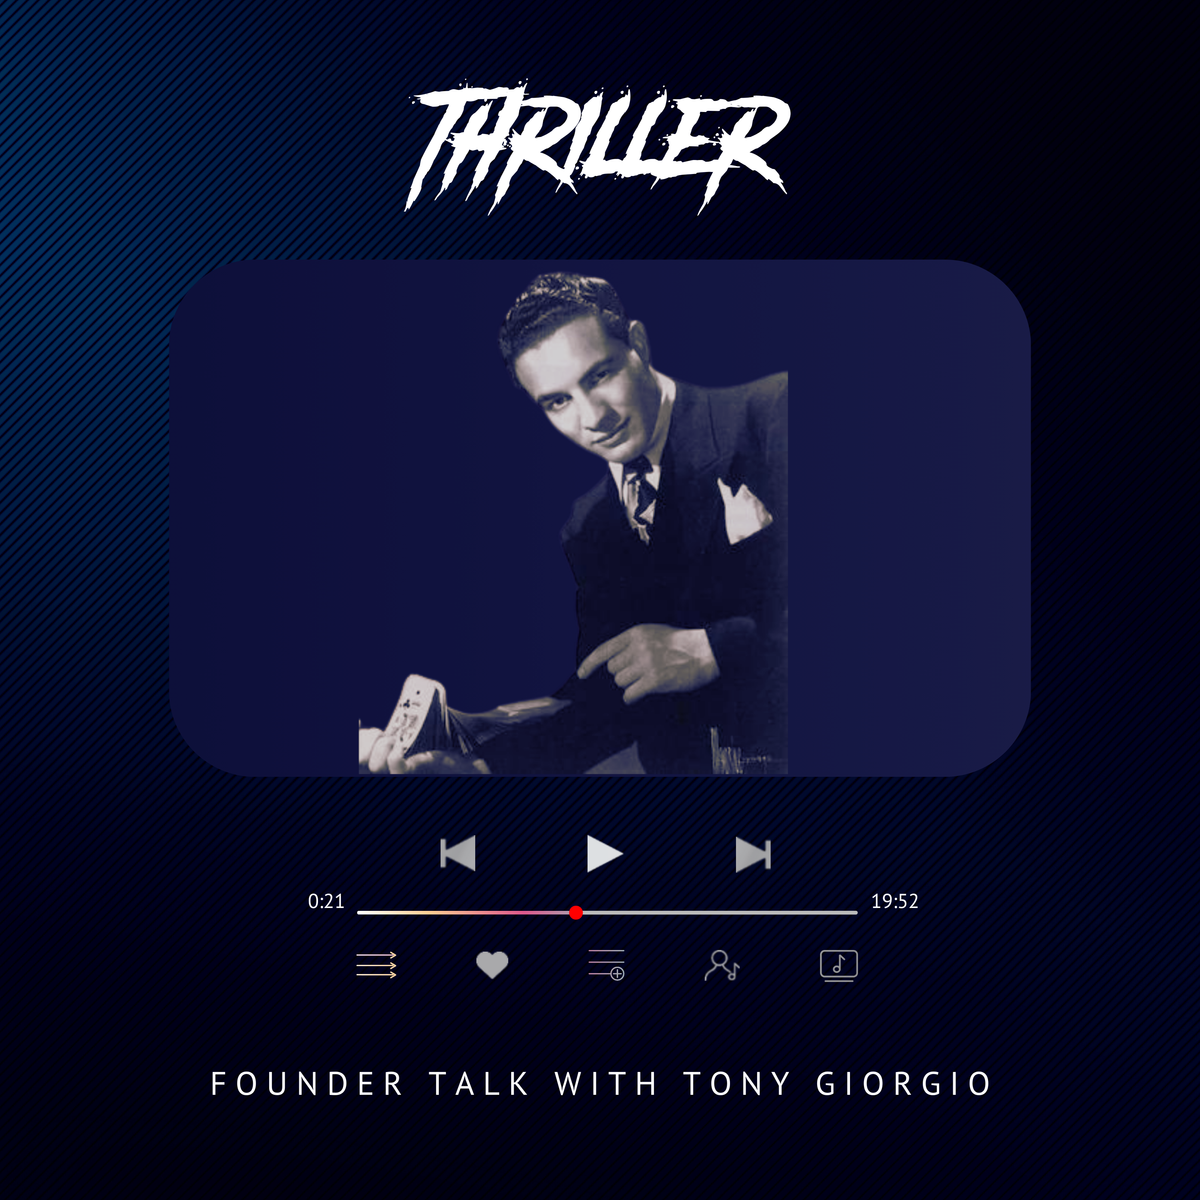 Founder talk with Tony Giorgio